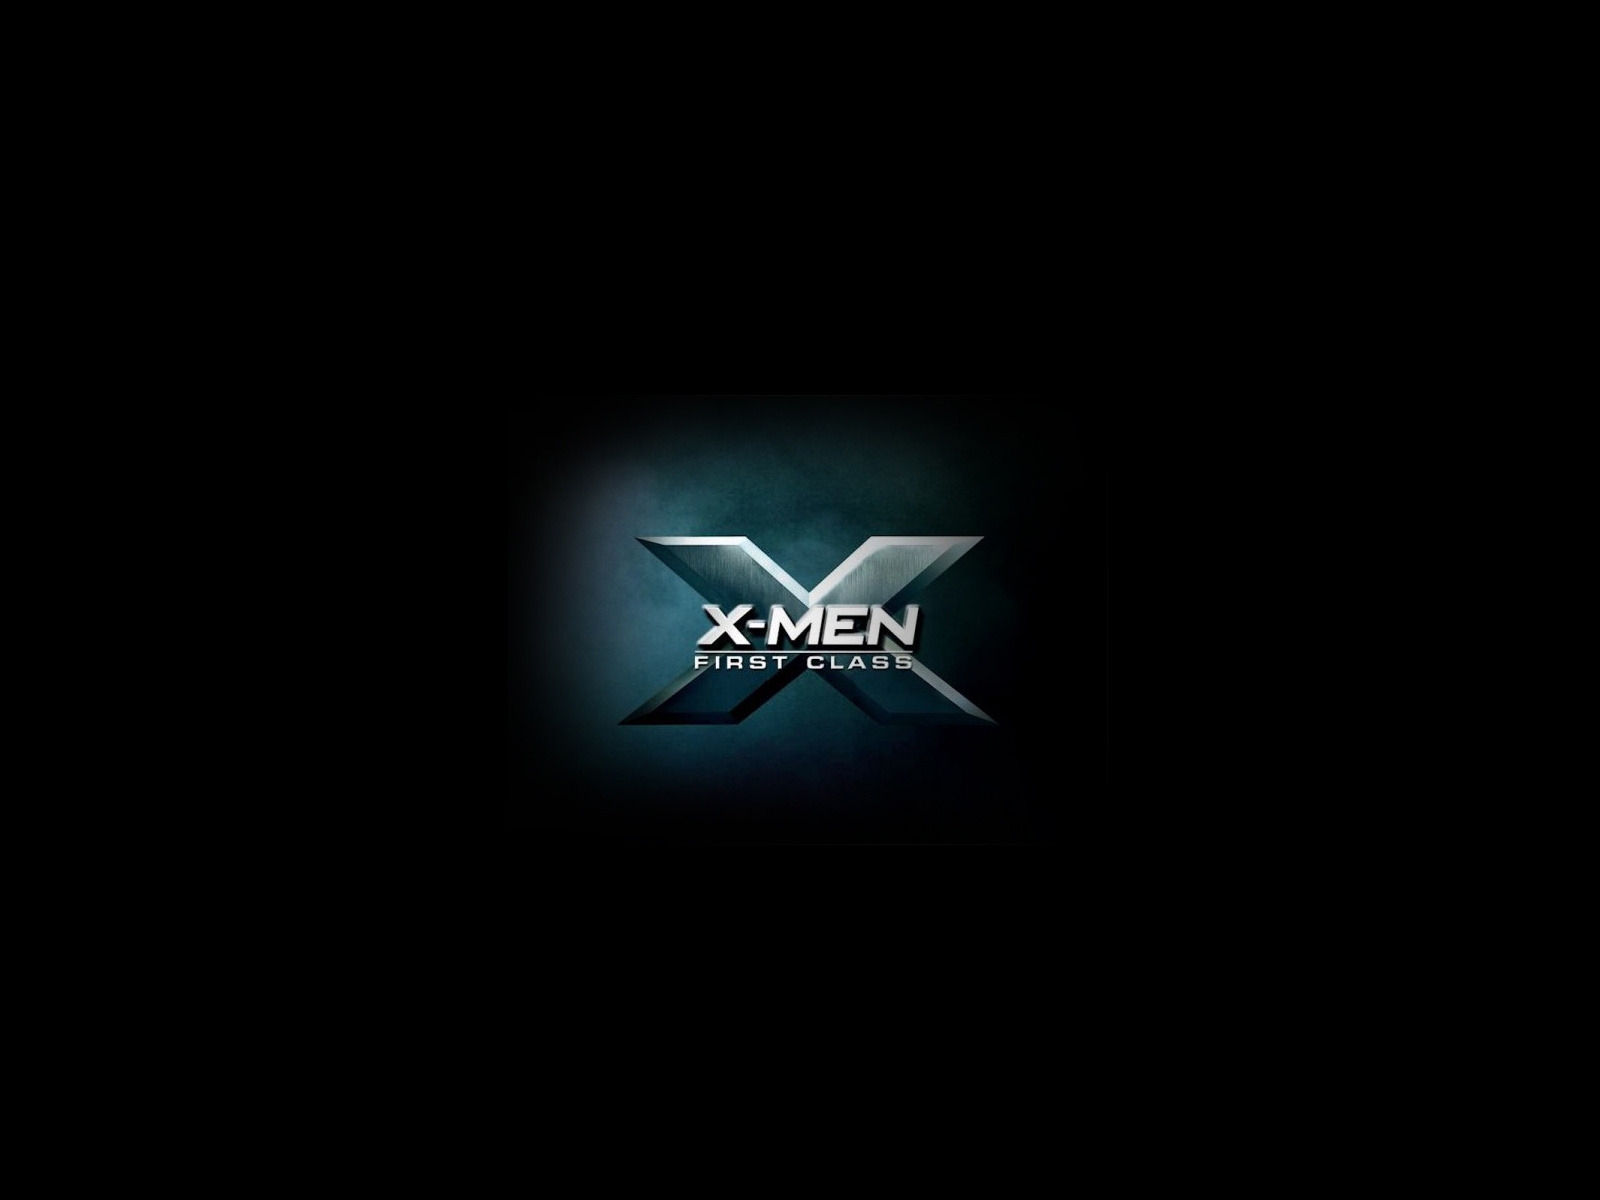 X Men First Class 2011 for 1600 x 1200 resolution